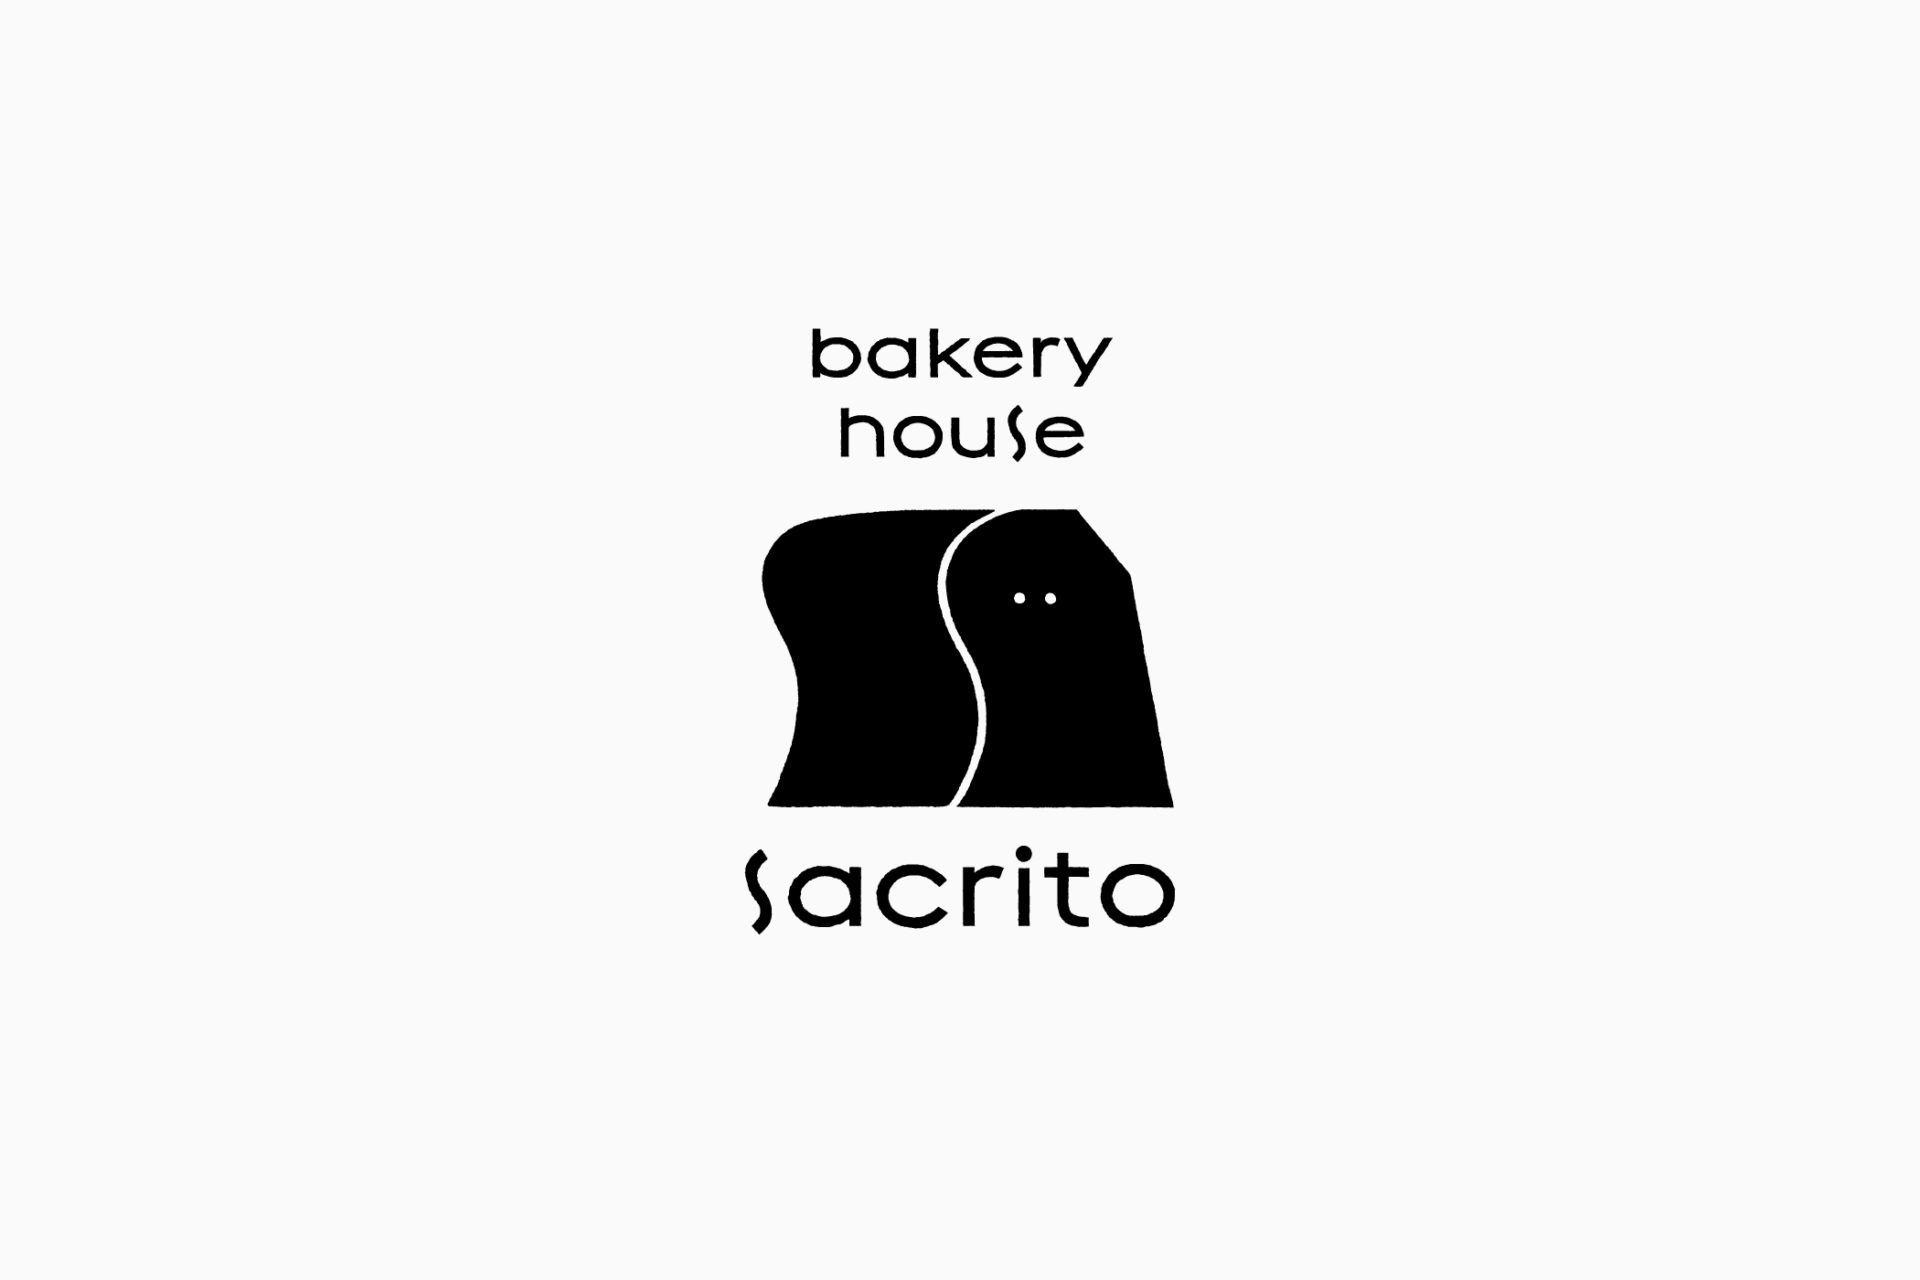 bakery house sacrito  logo design